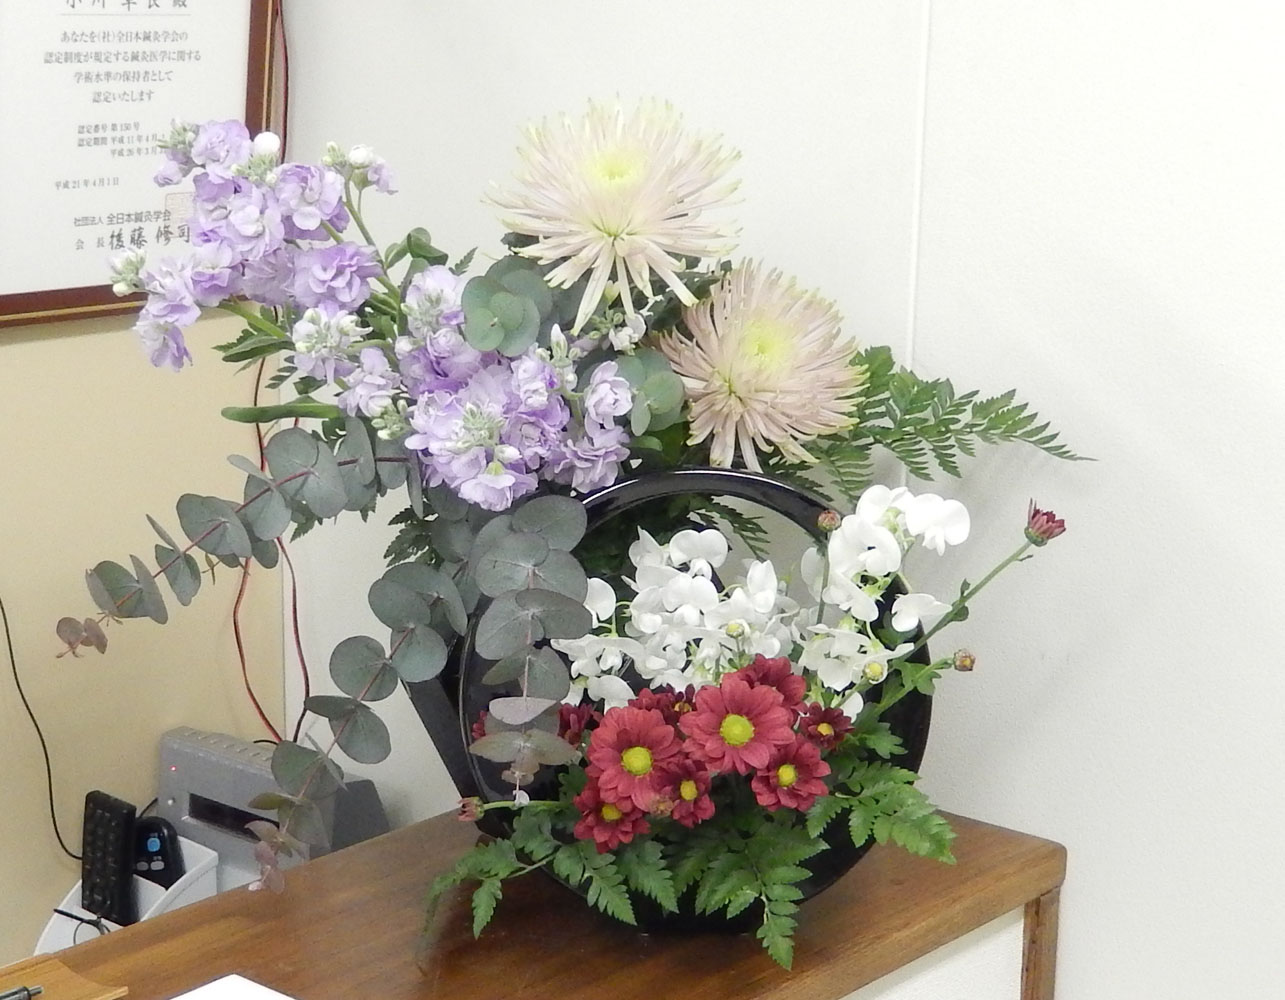 今週のお花 スプレーマム マム スイートピー ストック ユーカリ レザーファン 新宿の鍼灸院 杏林堂